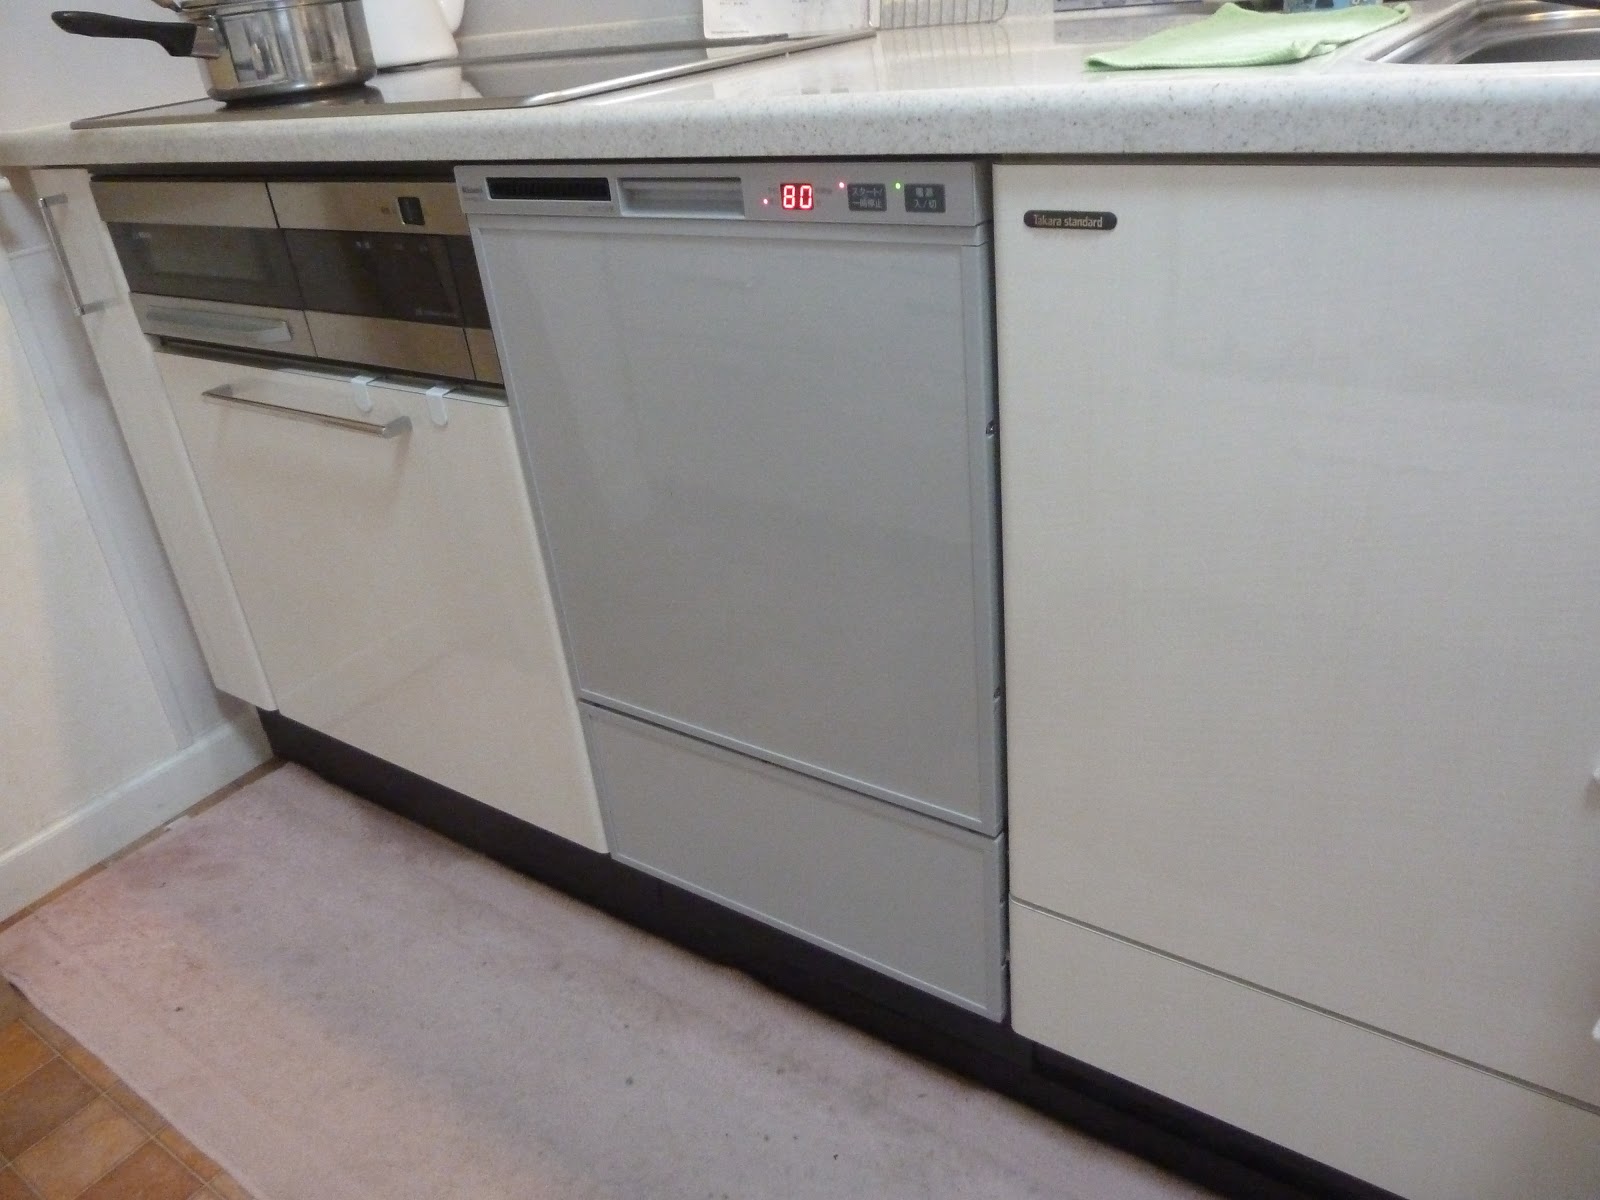  工事費込セット 食器洗い乾燥機 リンナイ RSW-F402C-B フロントオープン ビルトイン - 5